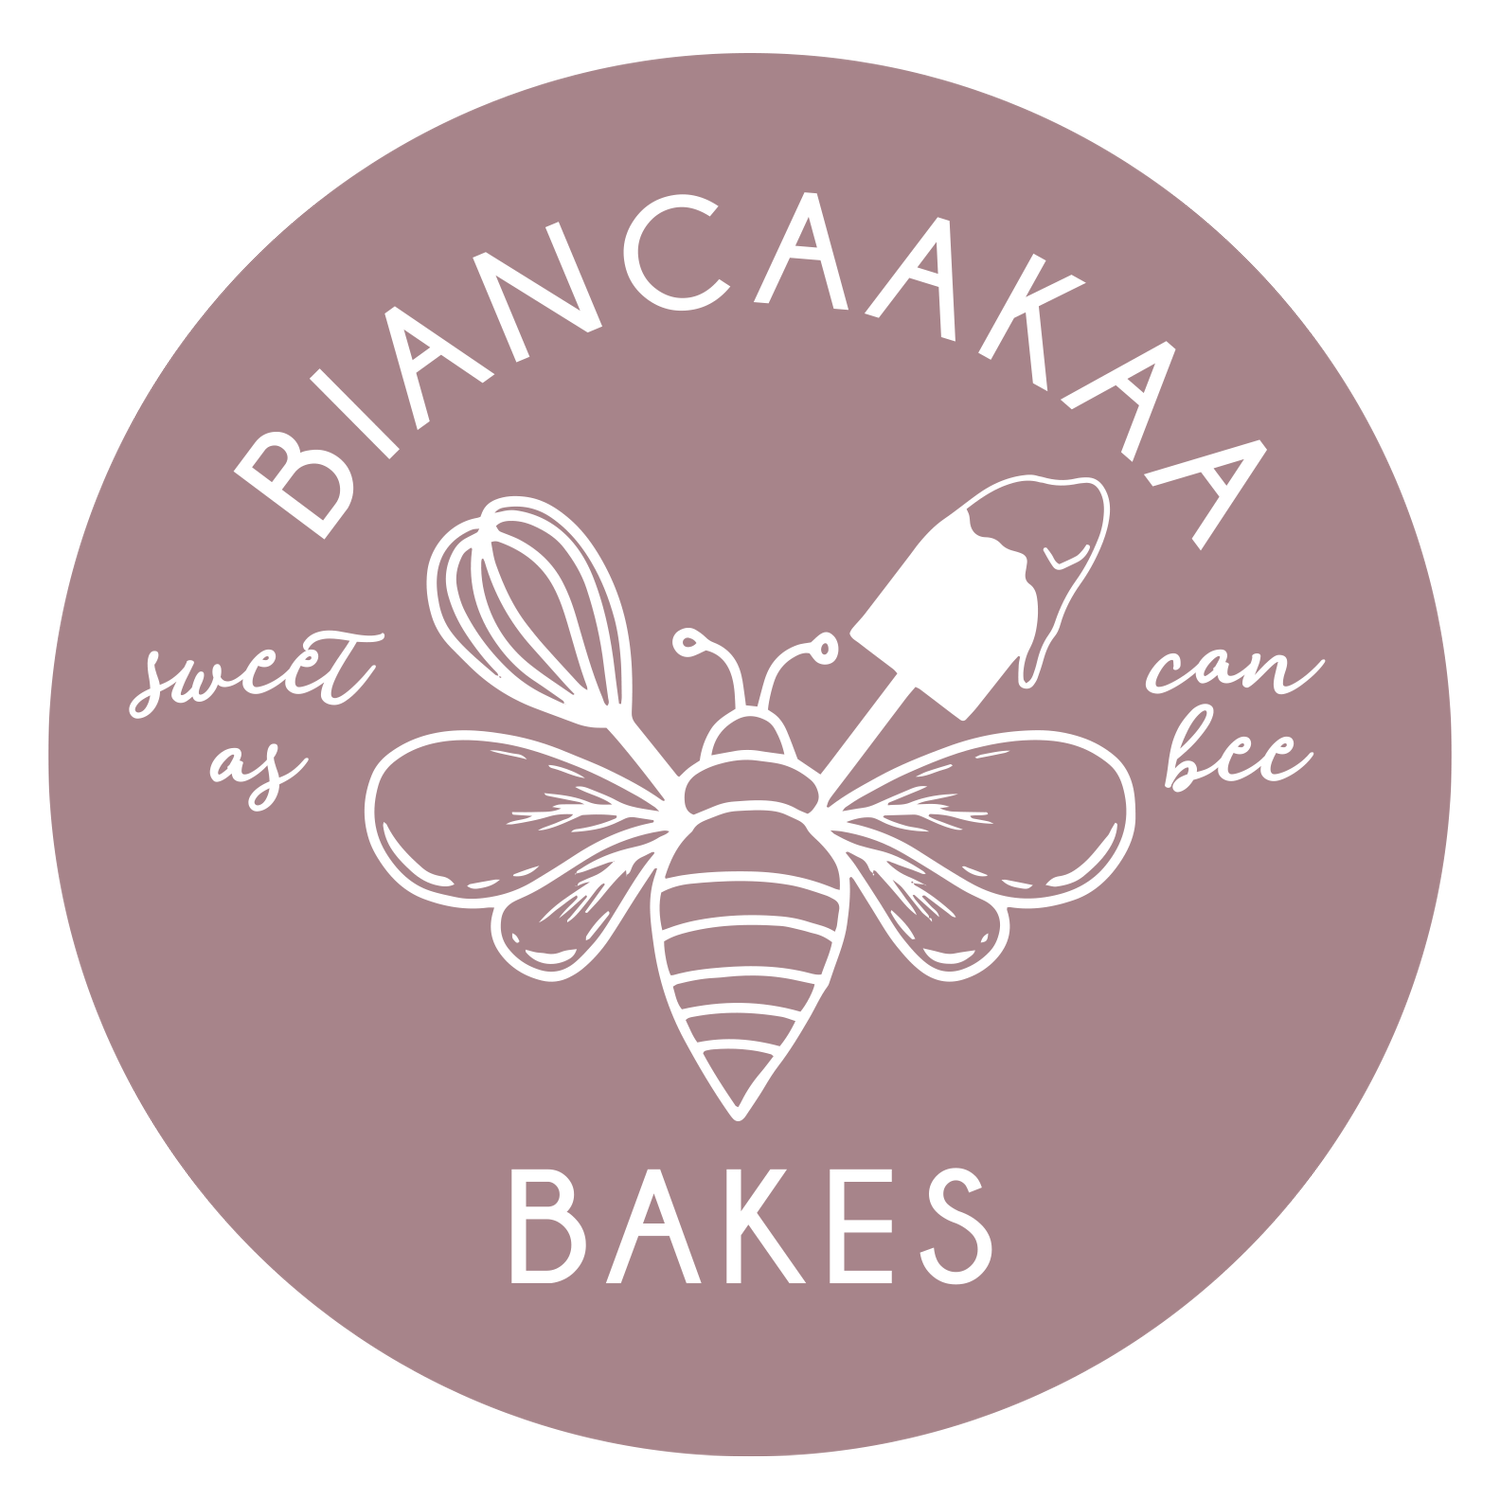 Biancaakaa Bakes